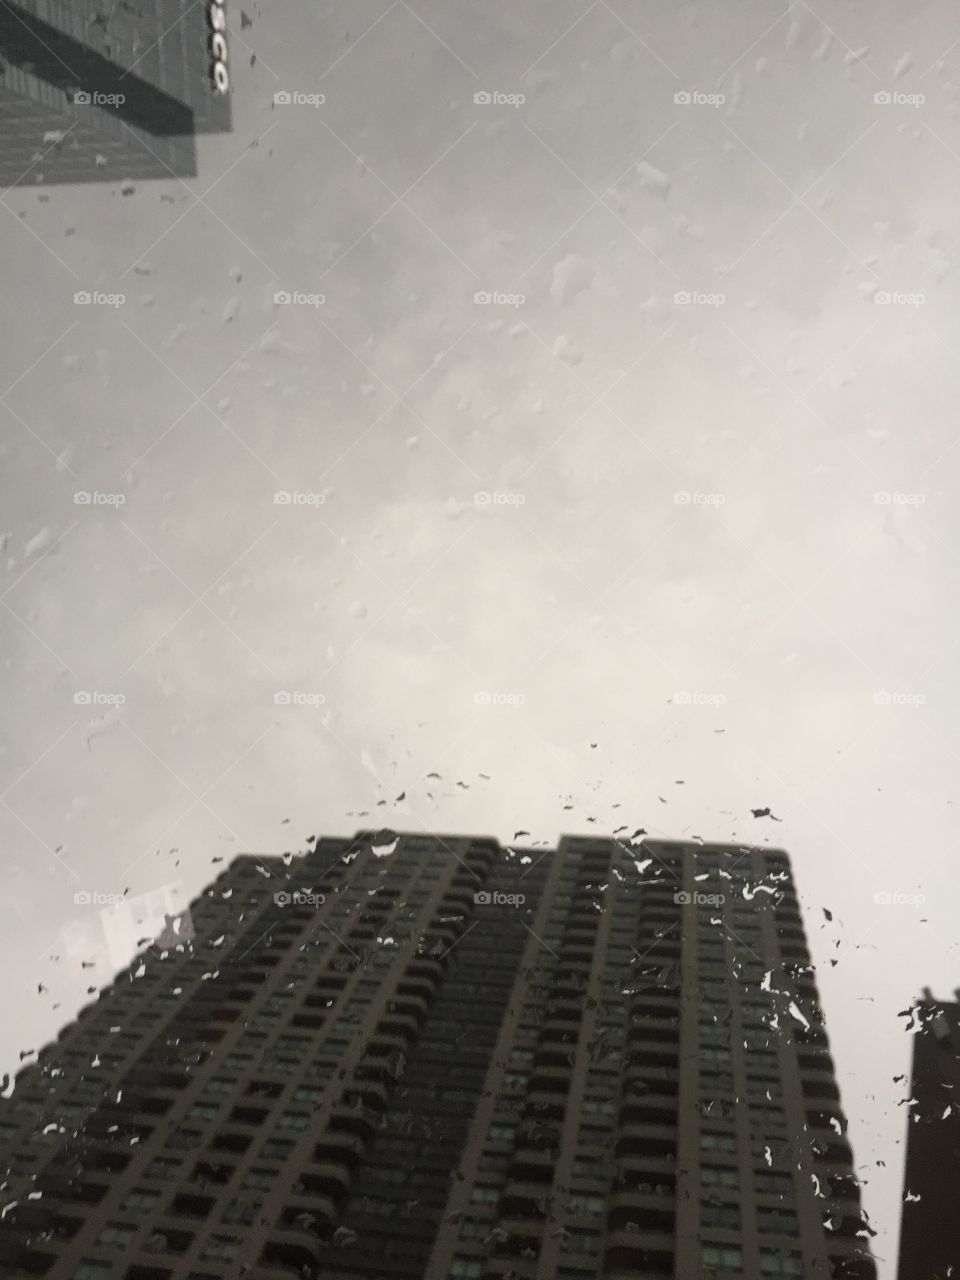 Raining 